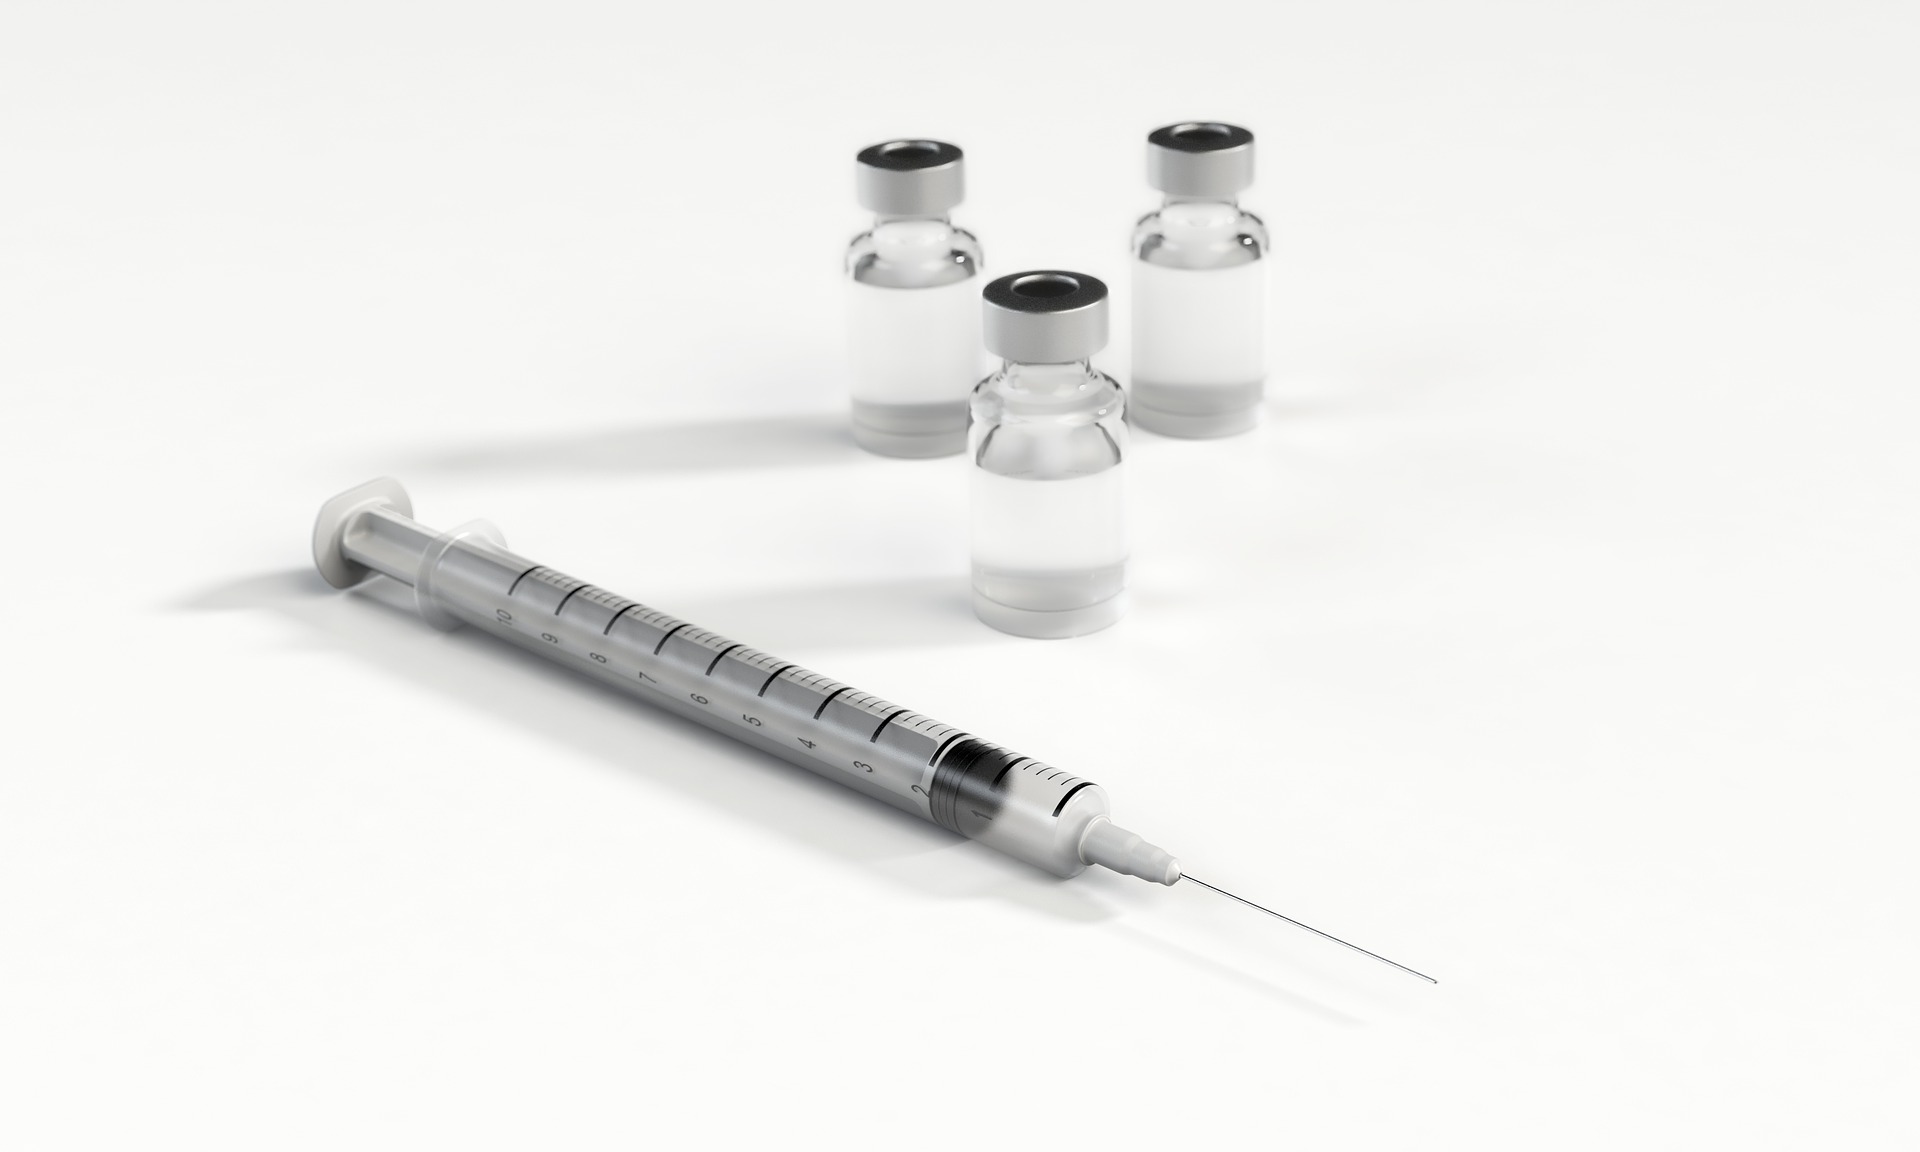 Çin aşısının maliyeti neden sır? Ankara neyi gizliyor, hukuk ne diyor?